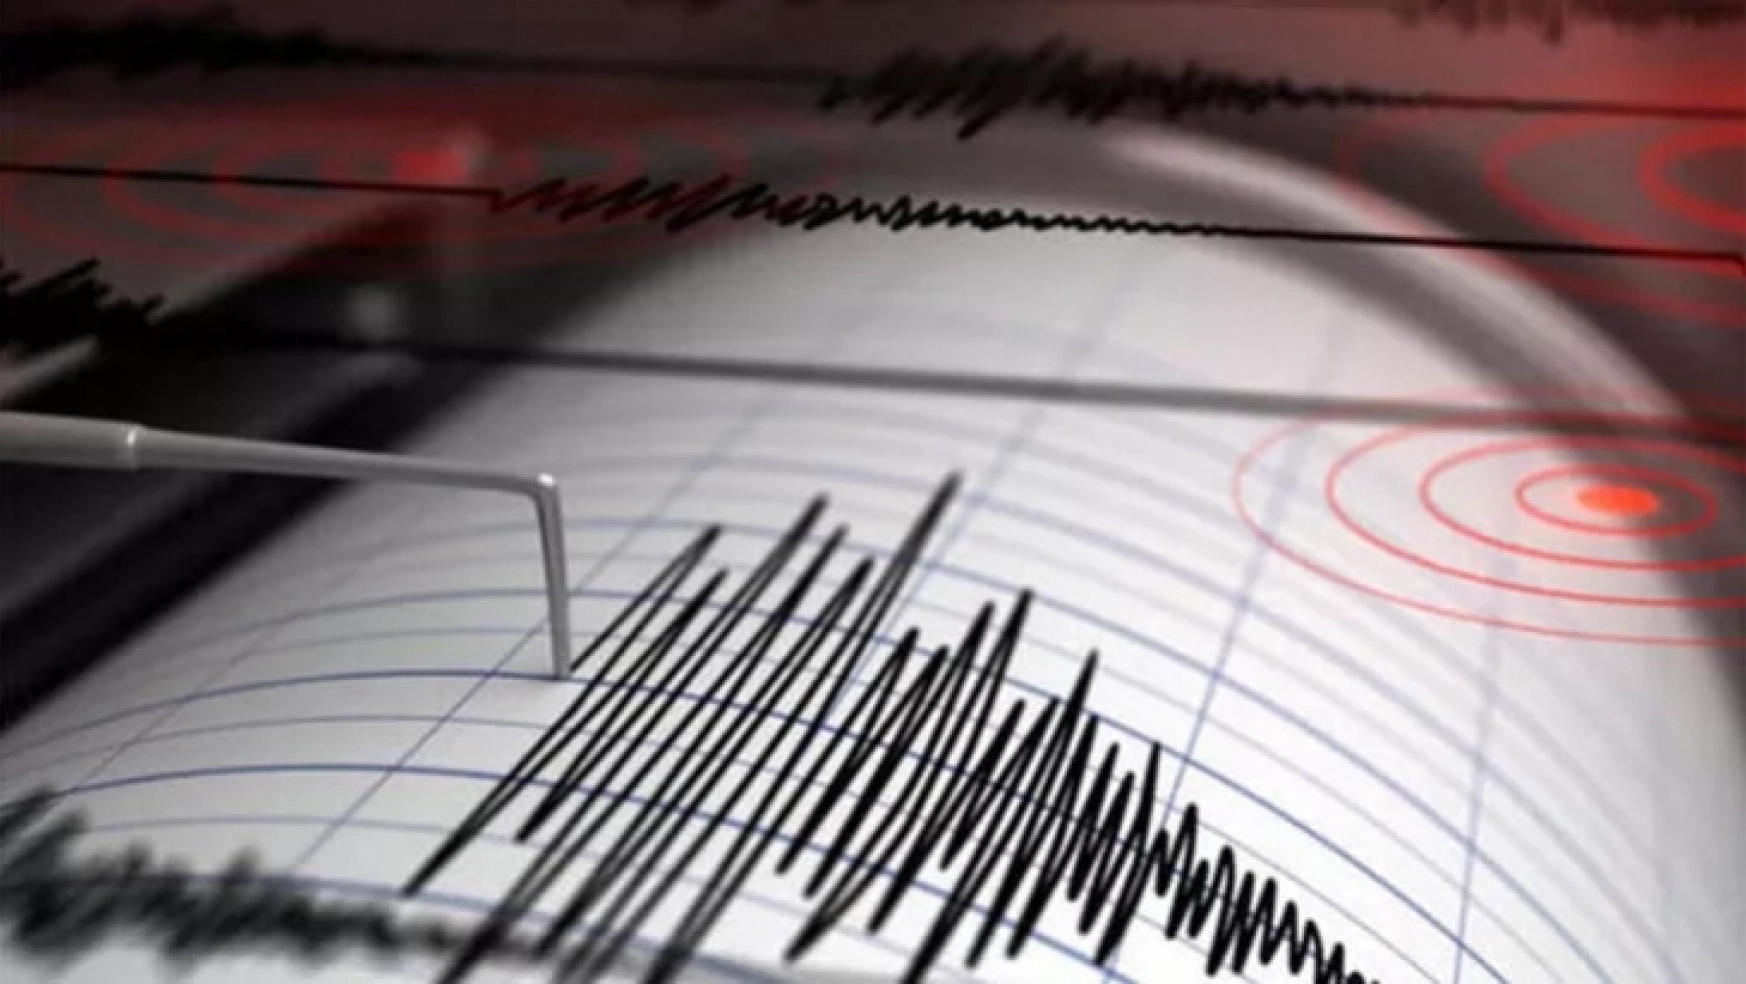 Malatya'da 3.5 Büyüklüğünde Deprem